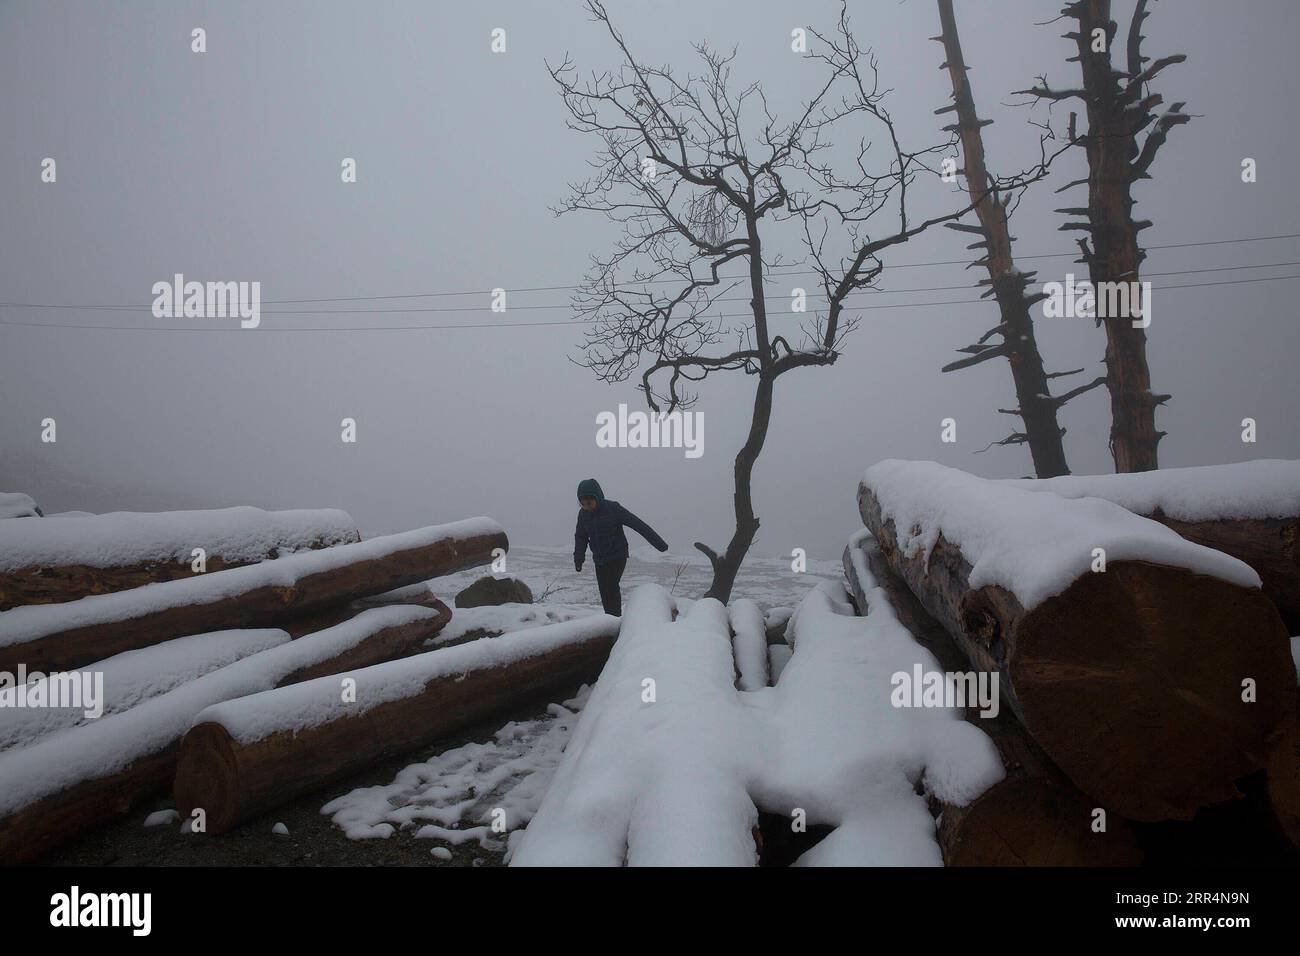 201209 -- SRINAGAR, 9 dicembre 2020 -- Una ragazza cammina in mezzo alla nebbia dopo una fresca nevicata in un villaggio nel distretto di Baramulla vicino alla città di Srinagar, la capitale estiva del Kashmir controllato dagli indiani, 9 dicembre 2020. KASHMIR-NEVICATE JavedxDar PUBLICATIONxNOTxINxCHN Foto Stock